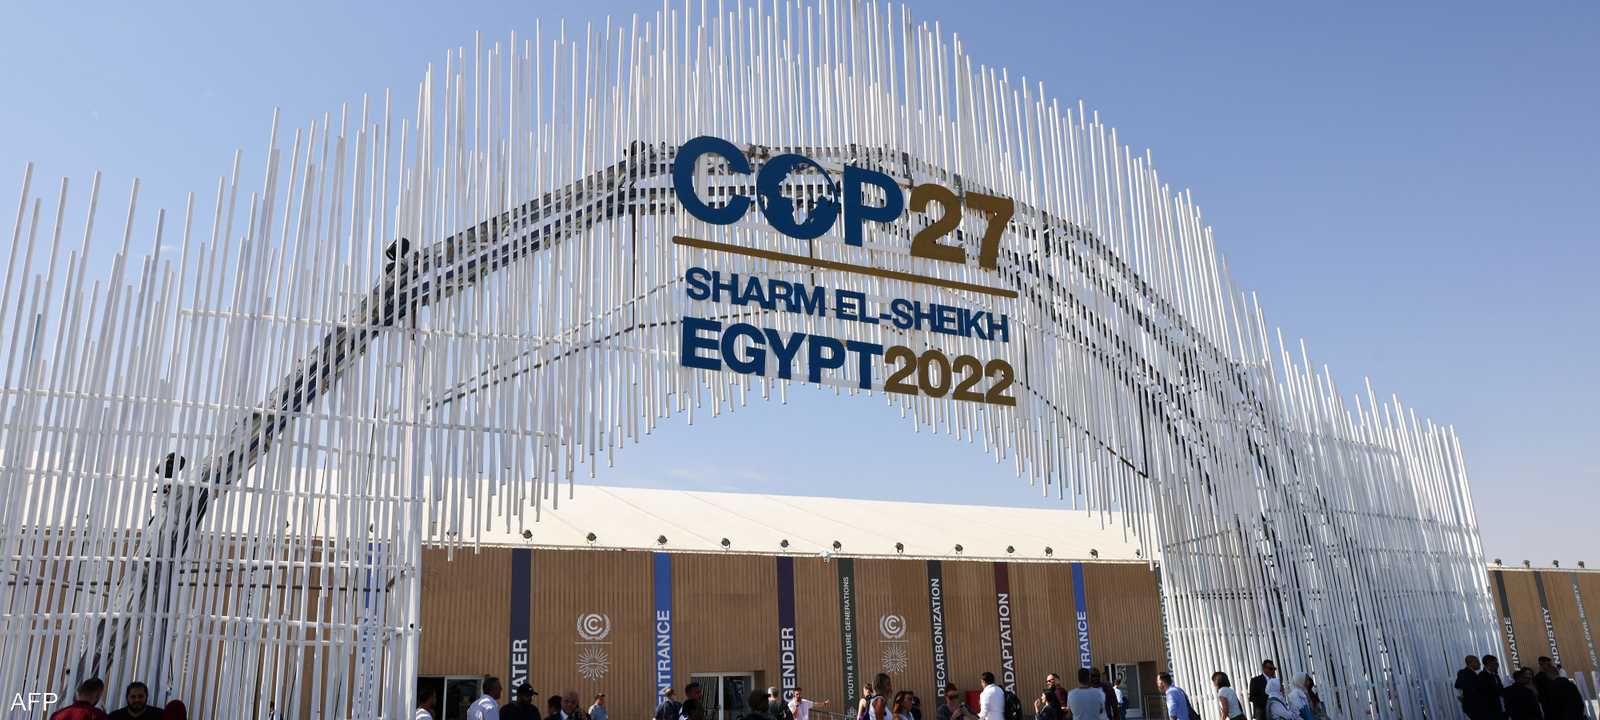 انطلاق قمة المناخ (كوب 27) في مصر